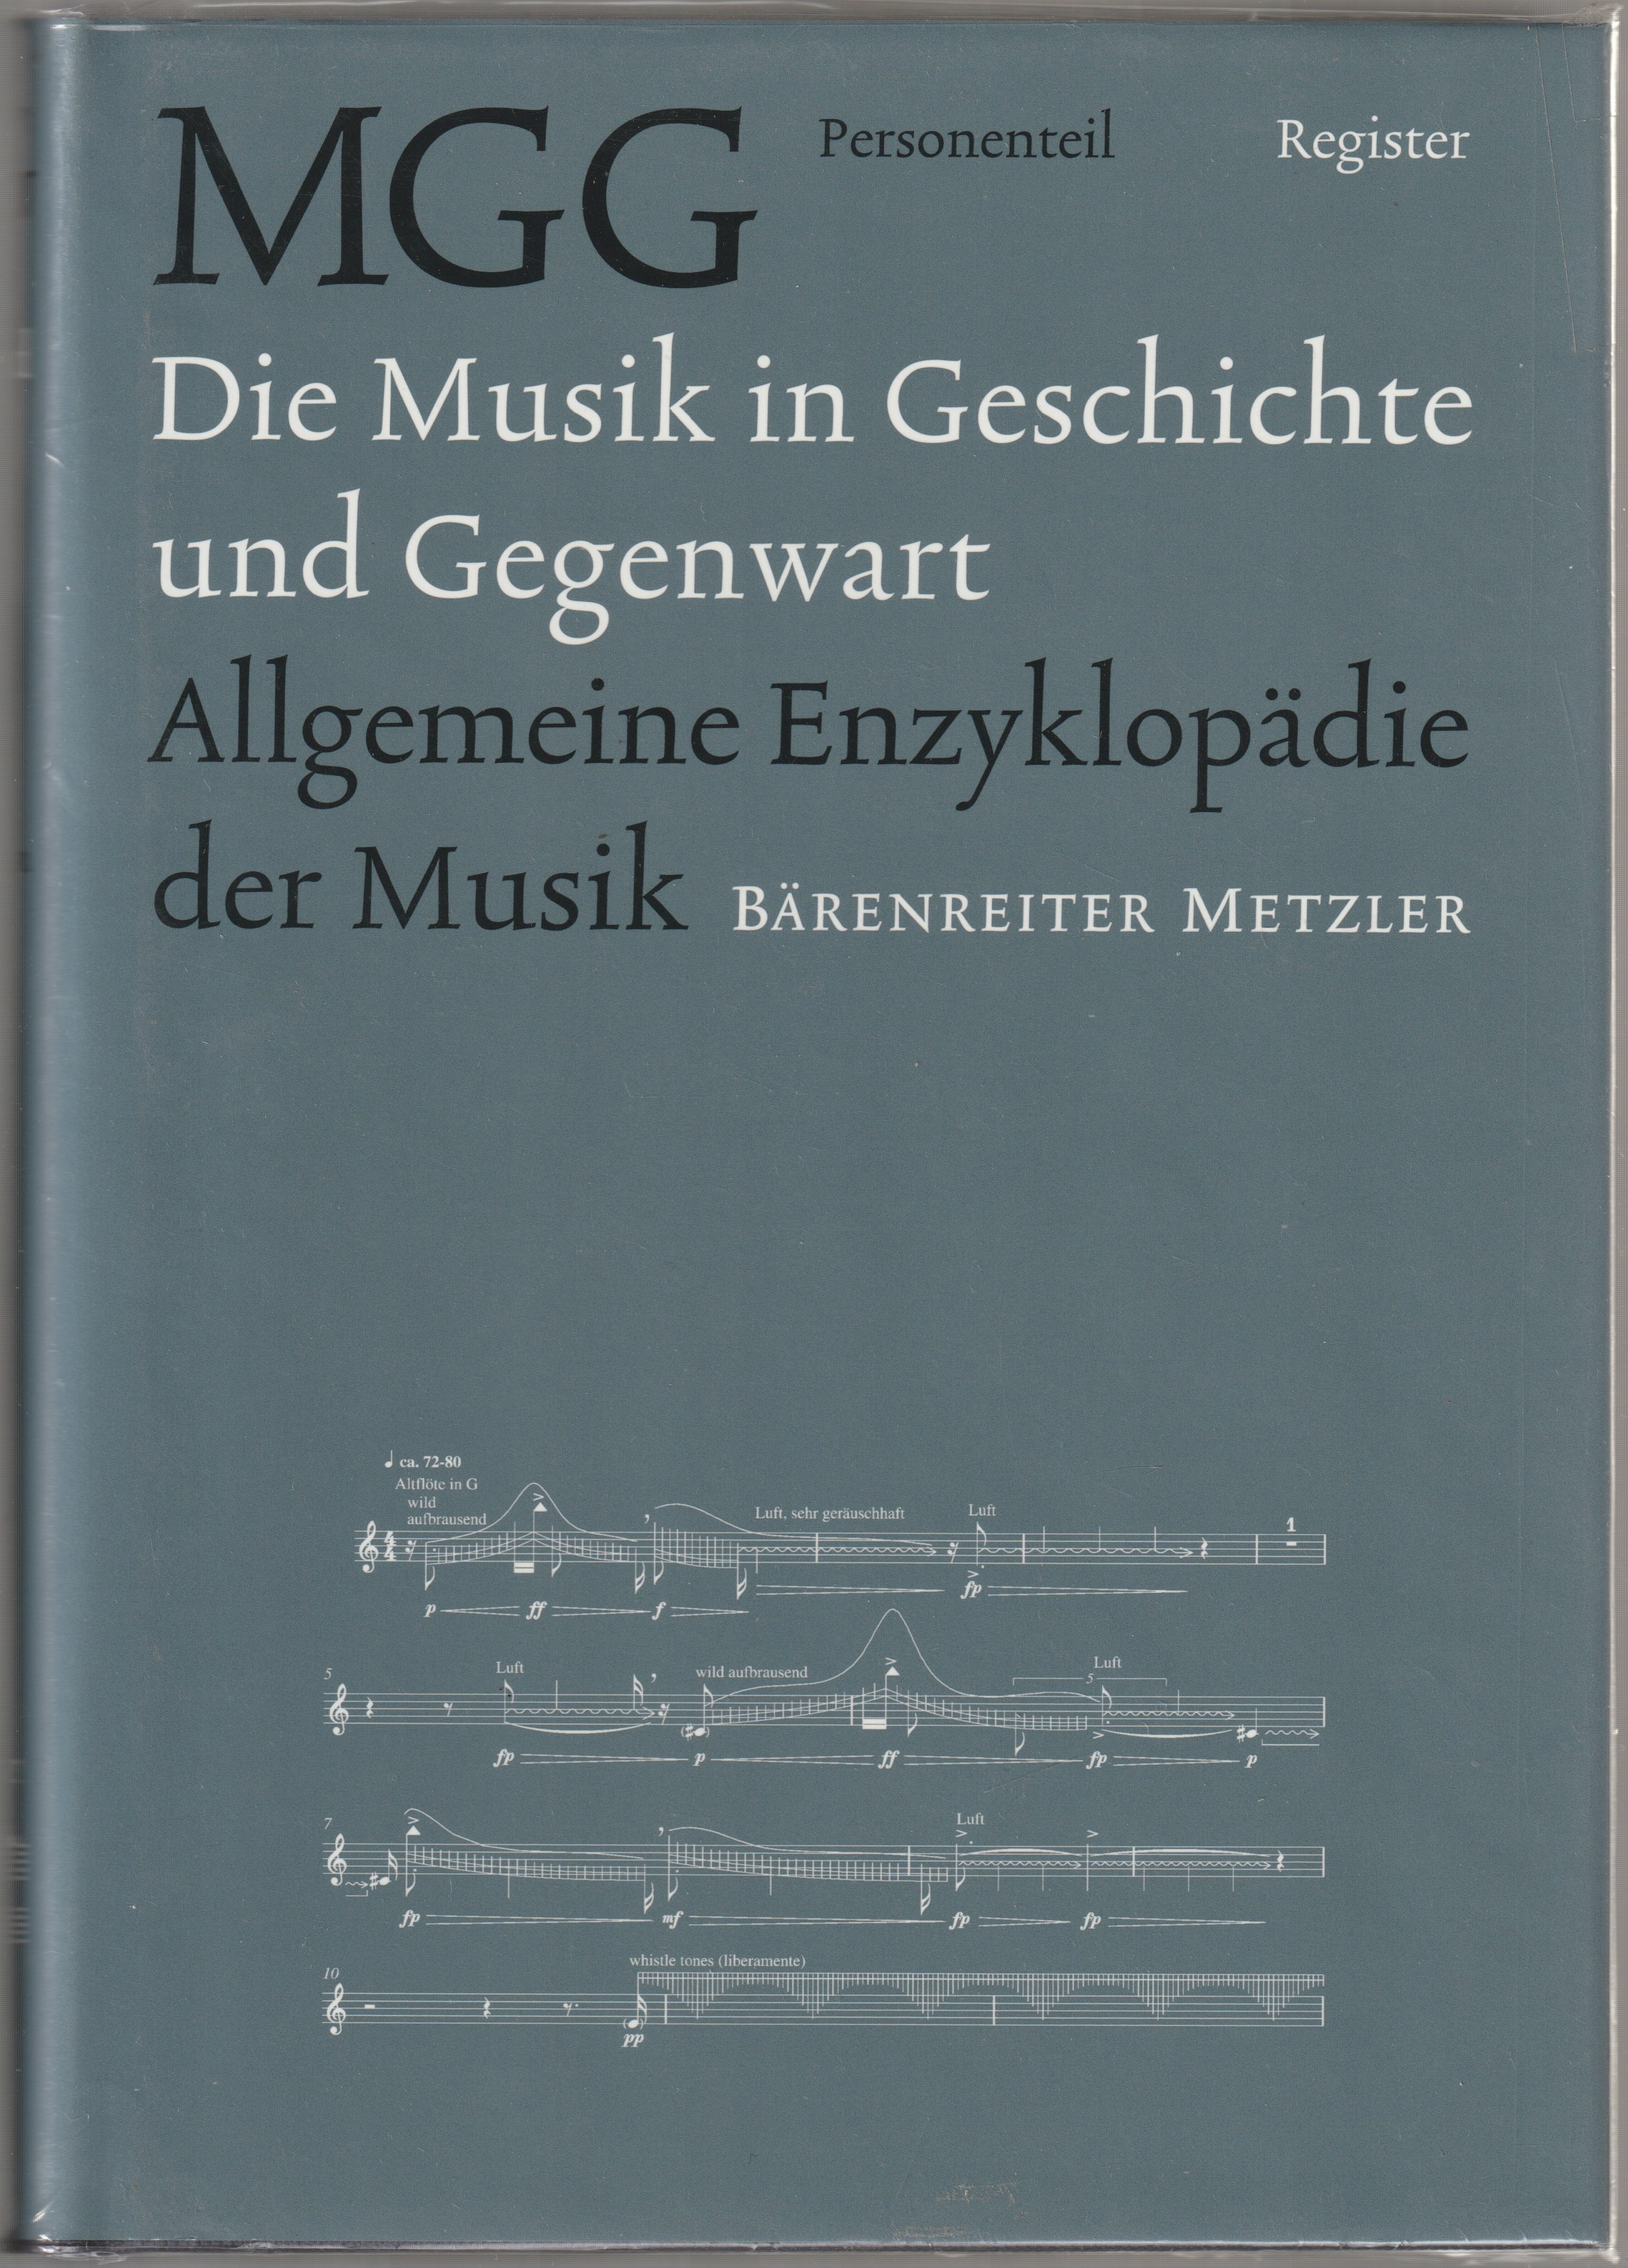 Die Musik in Geschichte und Gegenwart : allgemeine Enzyklopadie der Musik [2,18] Personenteil ; Register.